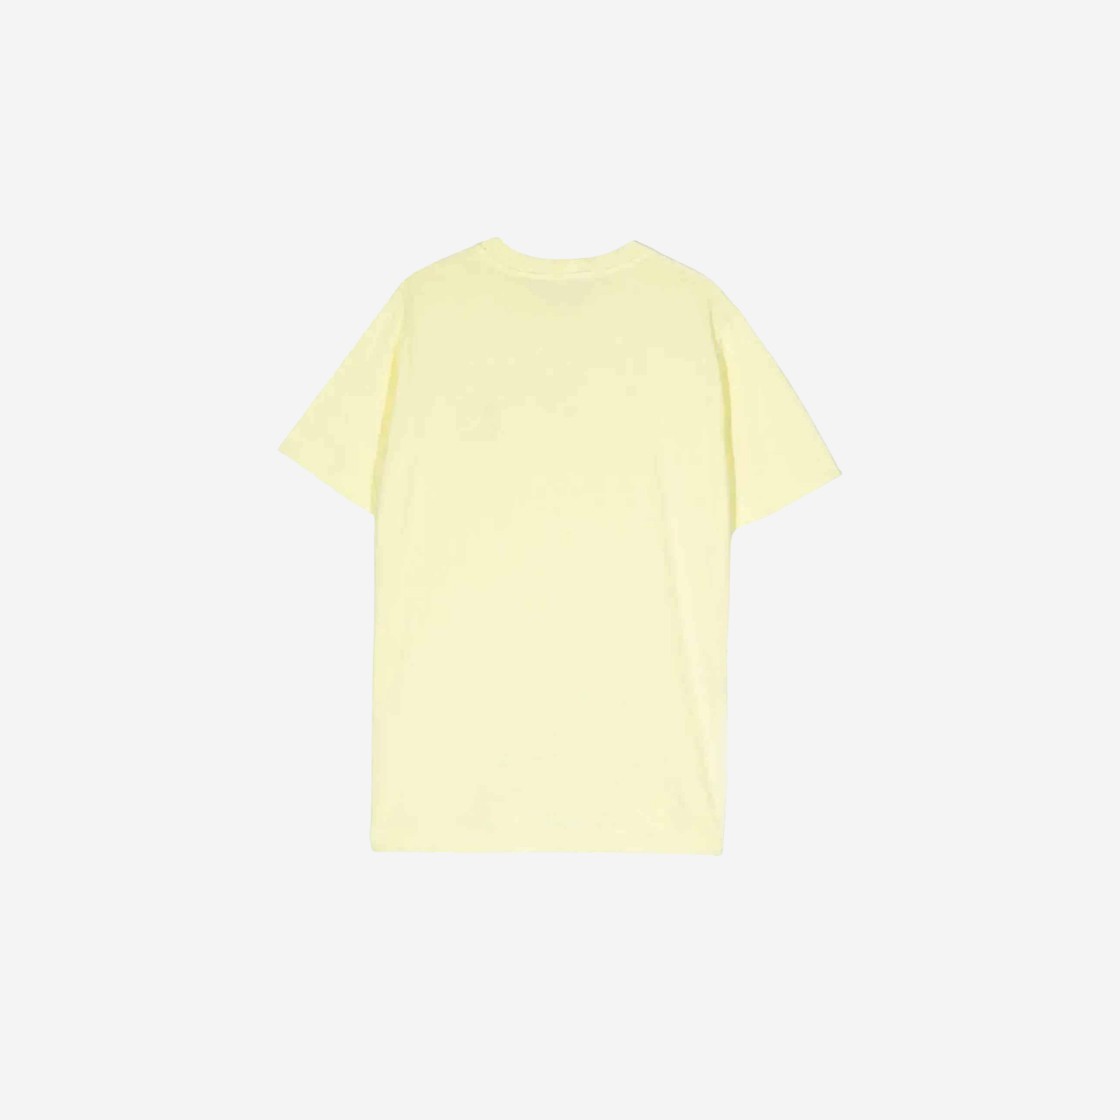 스톤 아일랜드 20147 티셔츠 레몬 - 23SS 키즈 781620147-V0031